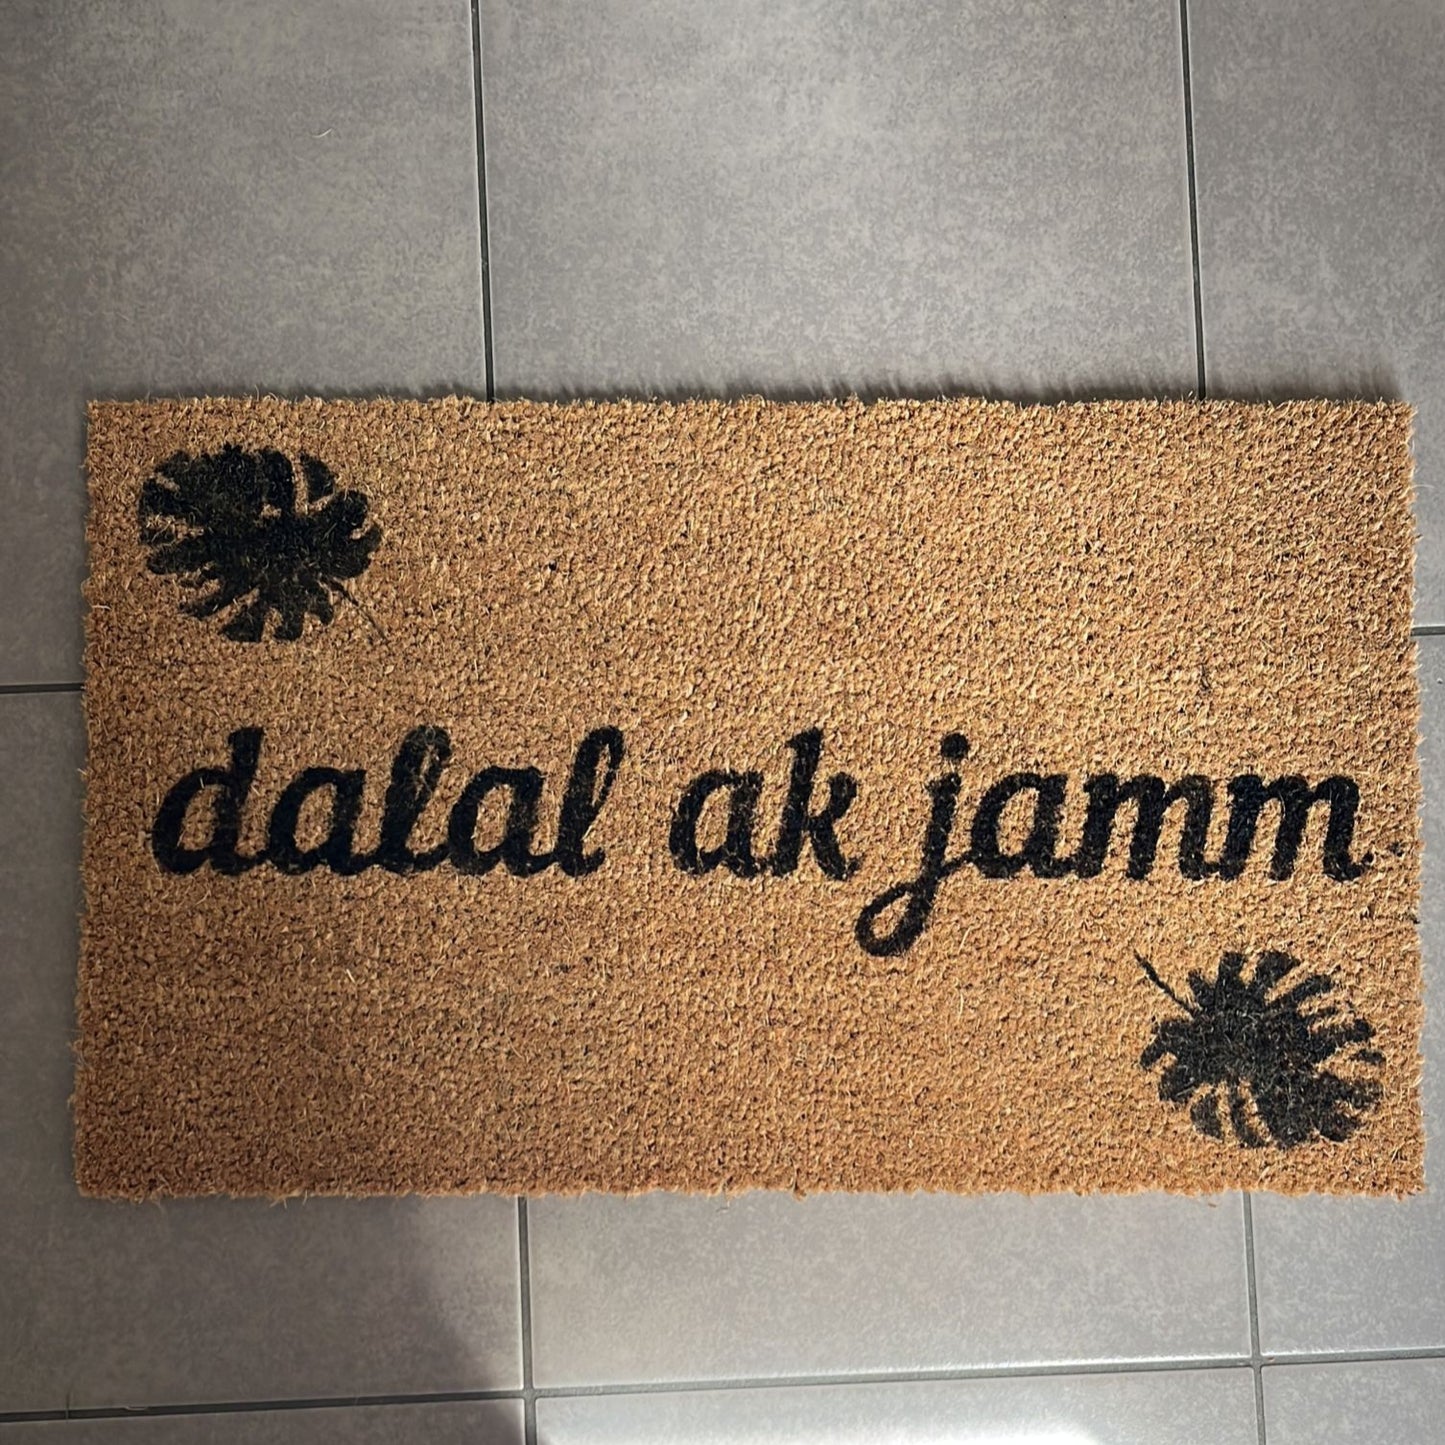 "Dalal ak jamm" door mat- "Welcome" in Wolof